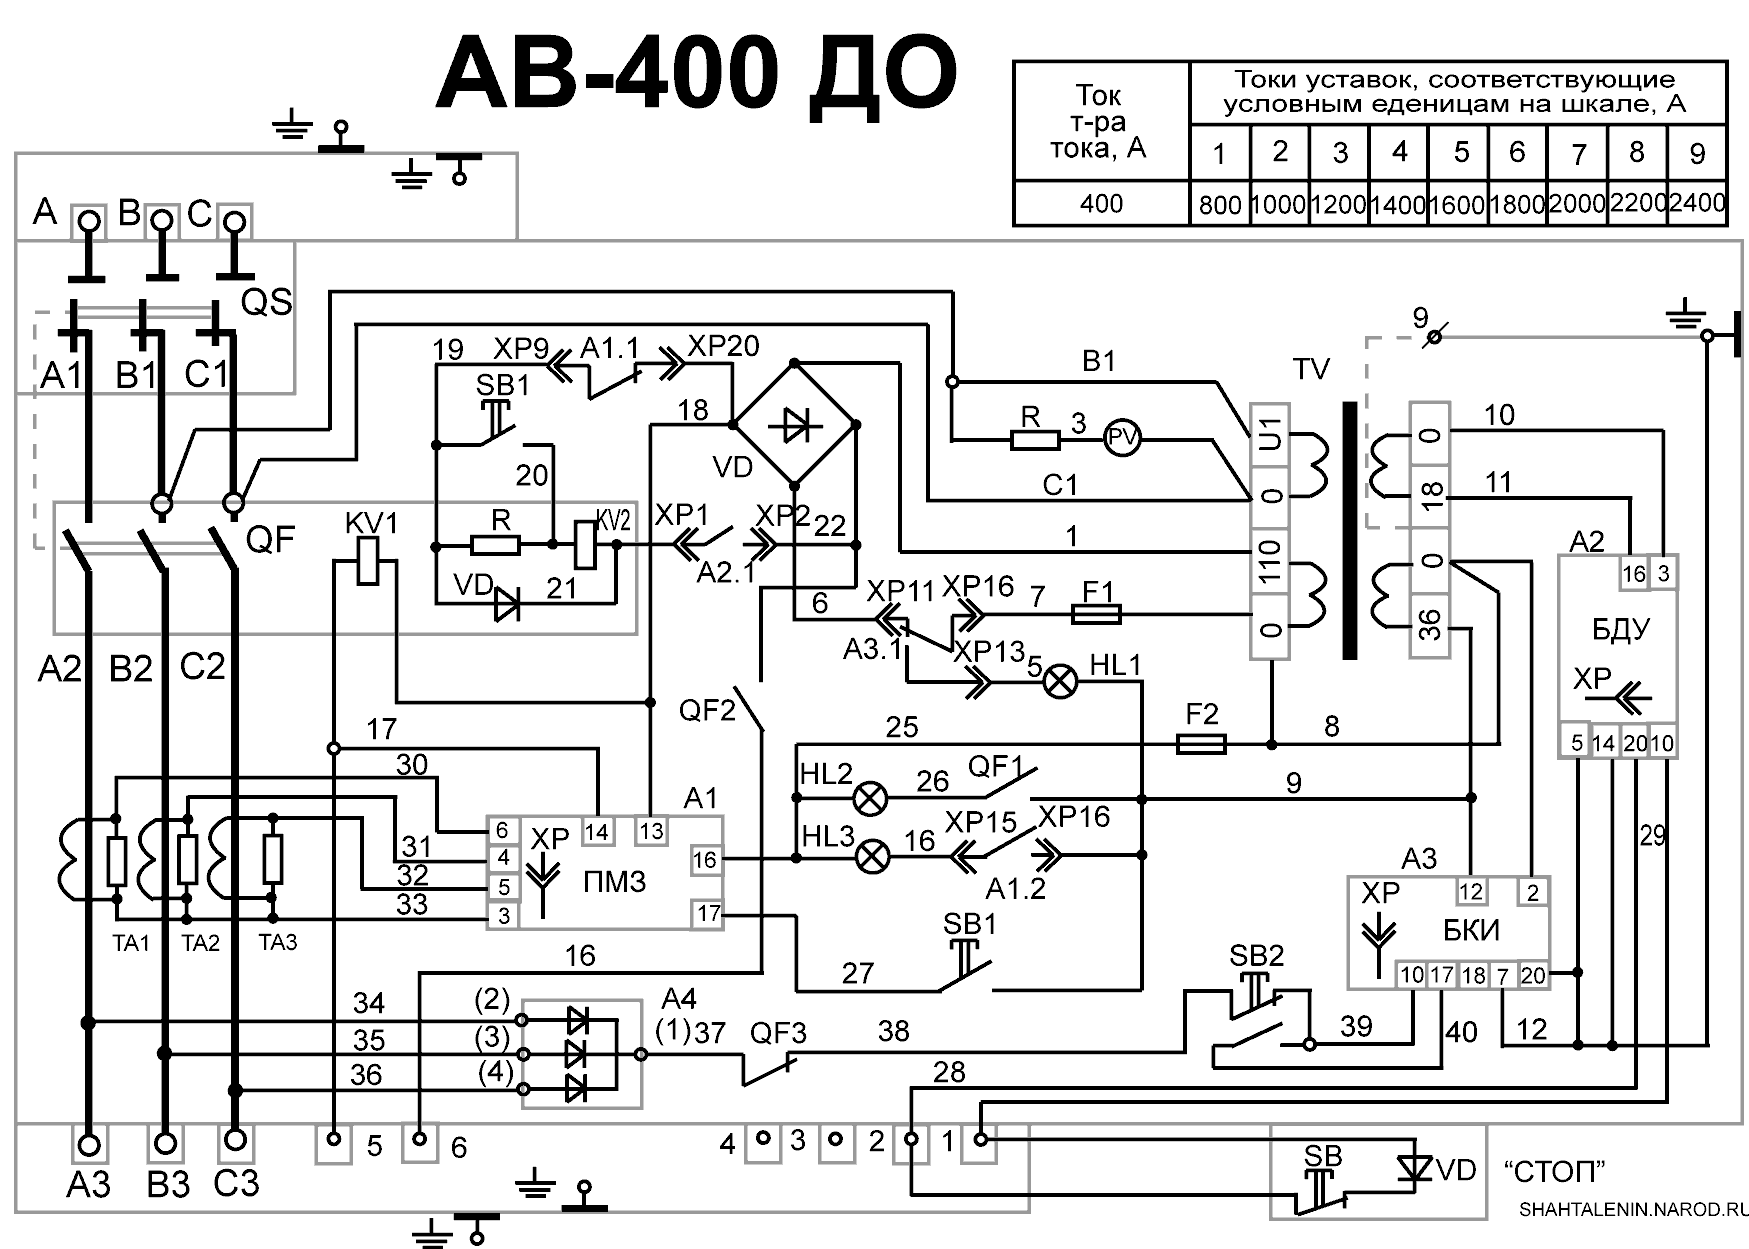 Схема электрическая принципиальная АВ-400 ДО